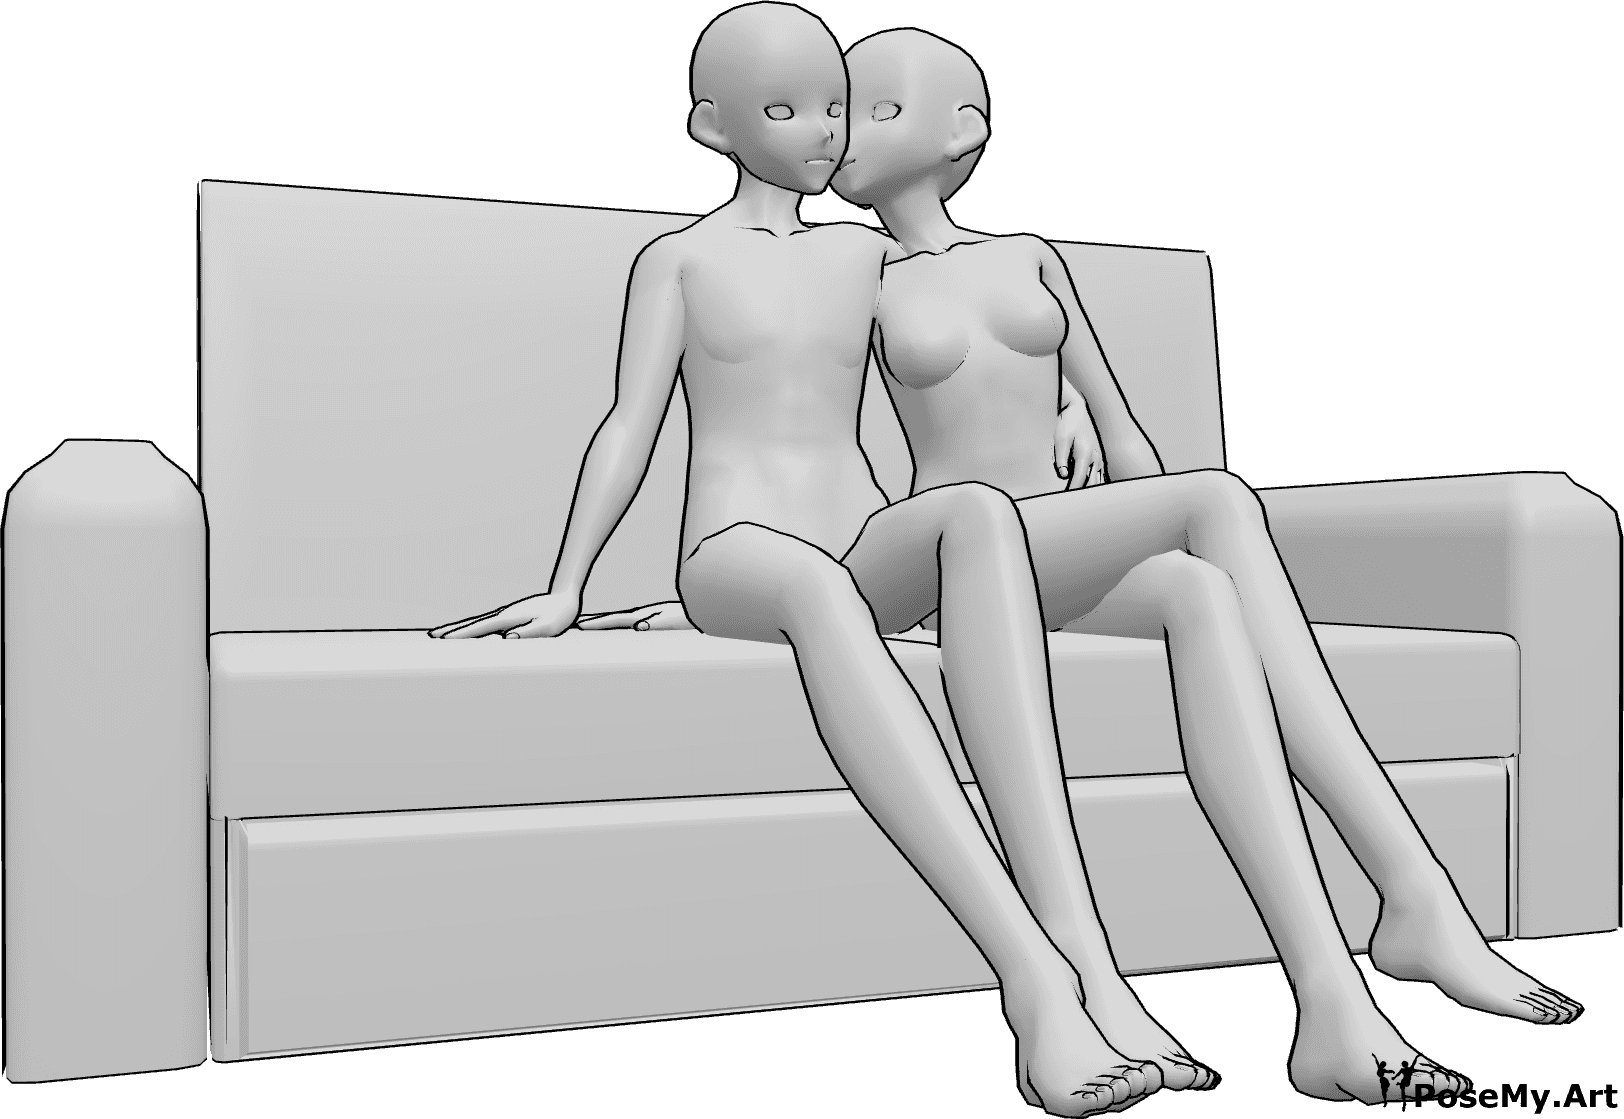 Posen-Referenz- Sitzende Wangenkuss-Pose - Anime weiblich und männlich sitzen auf der Couch, die Frau gibt einen Kuss auf die Wange